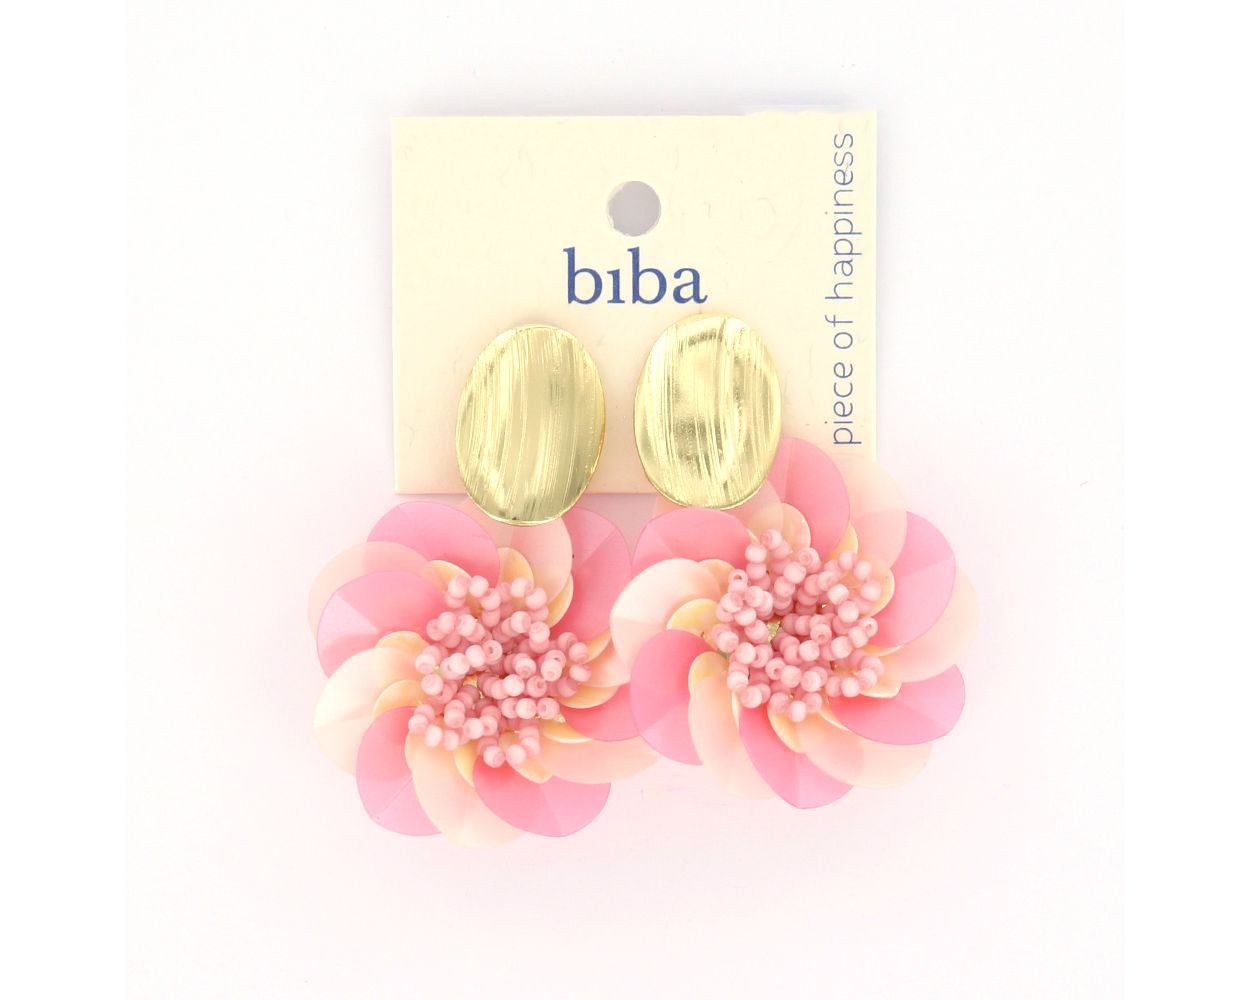 Biba oorbellen Flower Pink - 83361